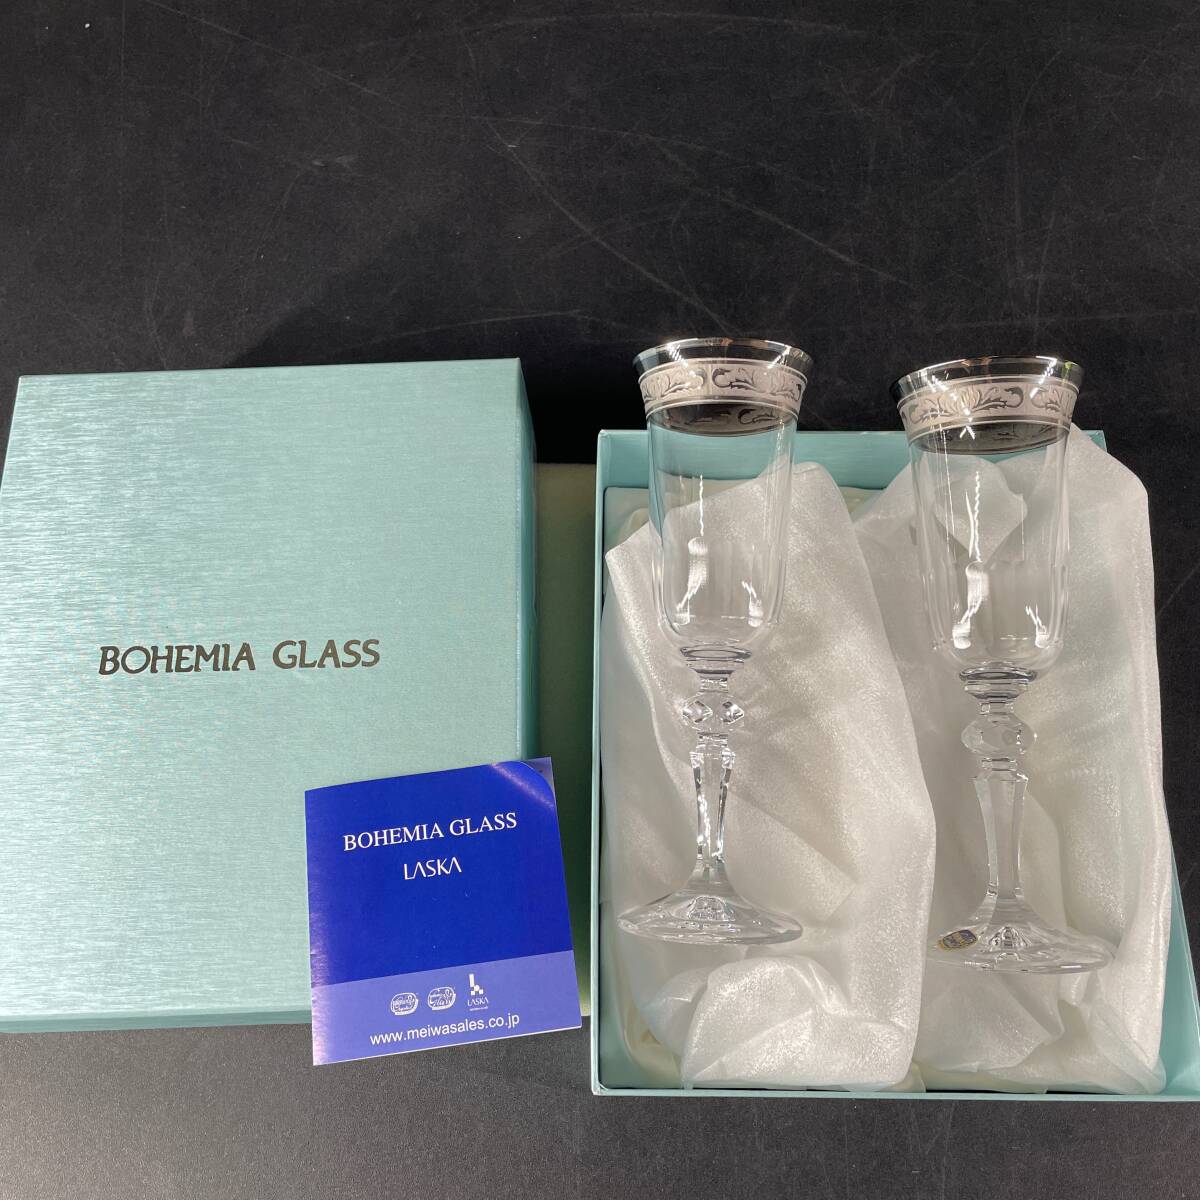 未使用 長期保管品 BOHEMIA GLASS LASKA ボヘミアングラス ボヘミア 硝子食器 酒器 グラス ワイン VR-5001 [MADE IN CZECH REPUBLIC]/u14aの画像1